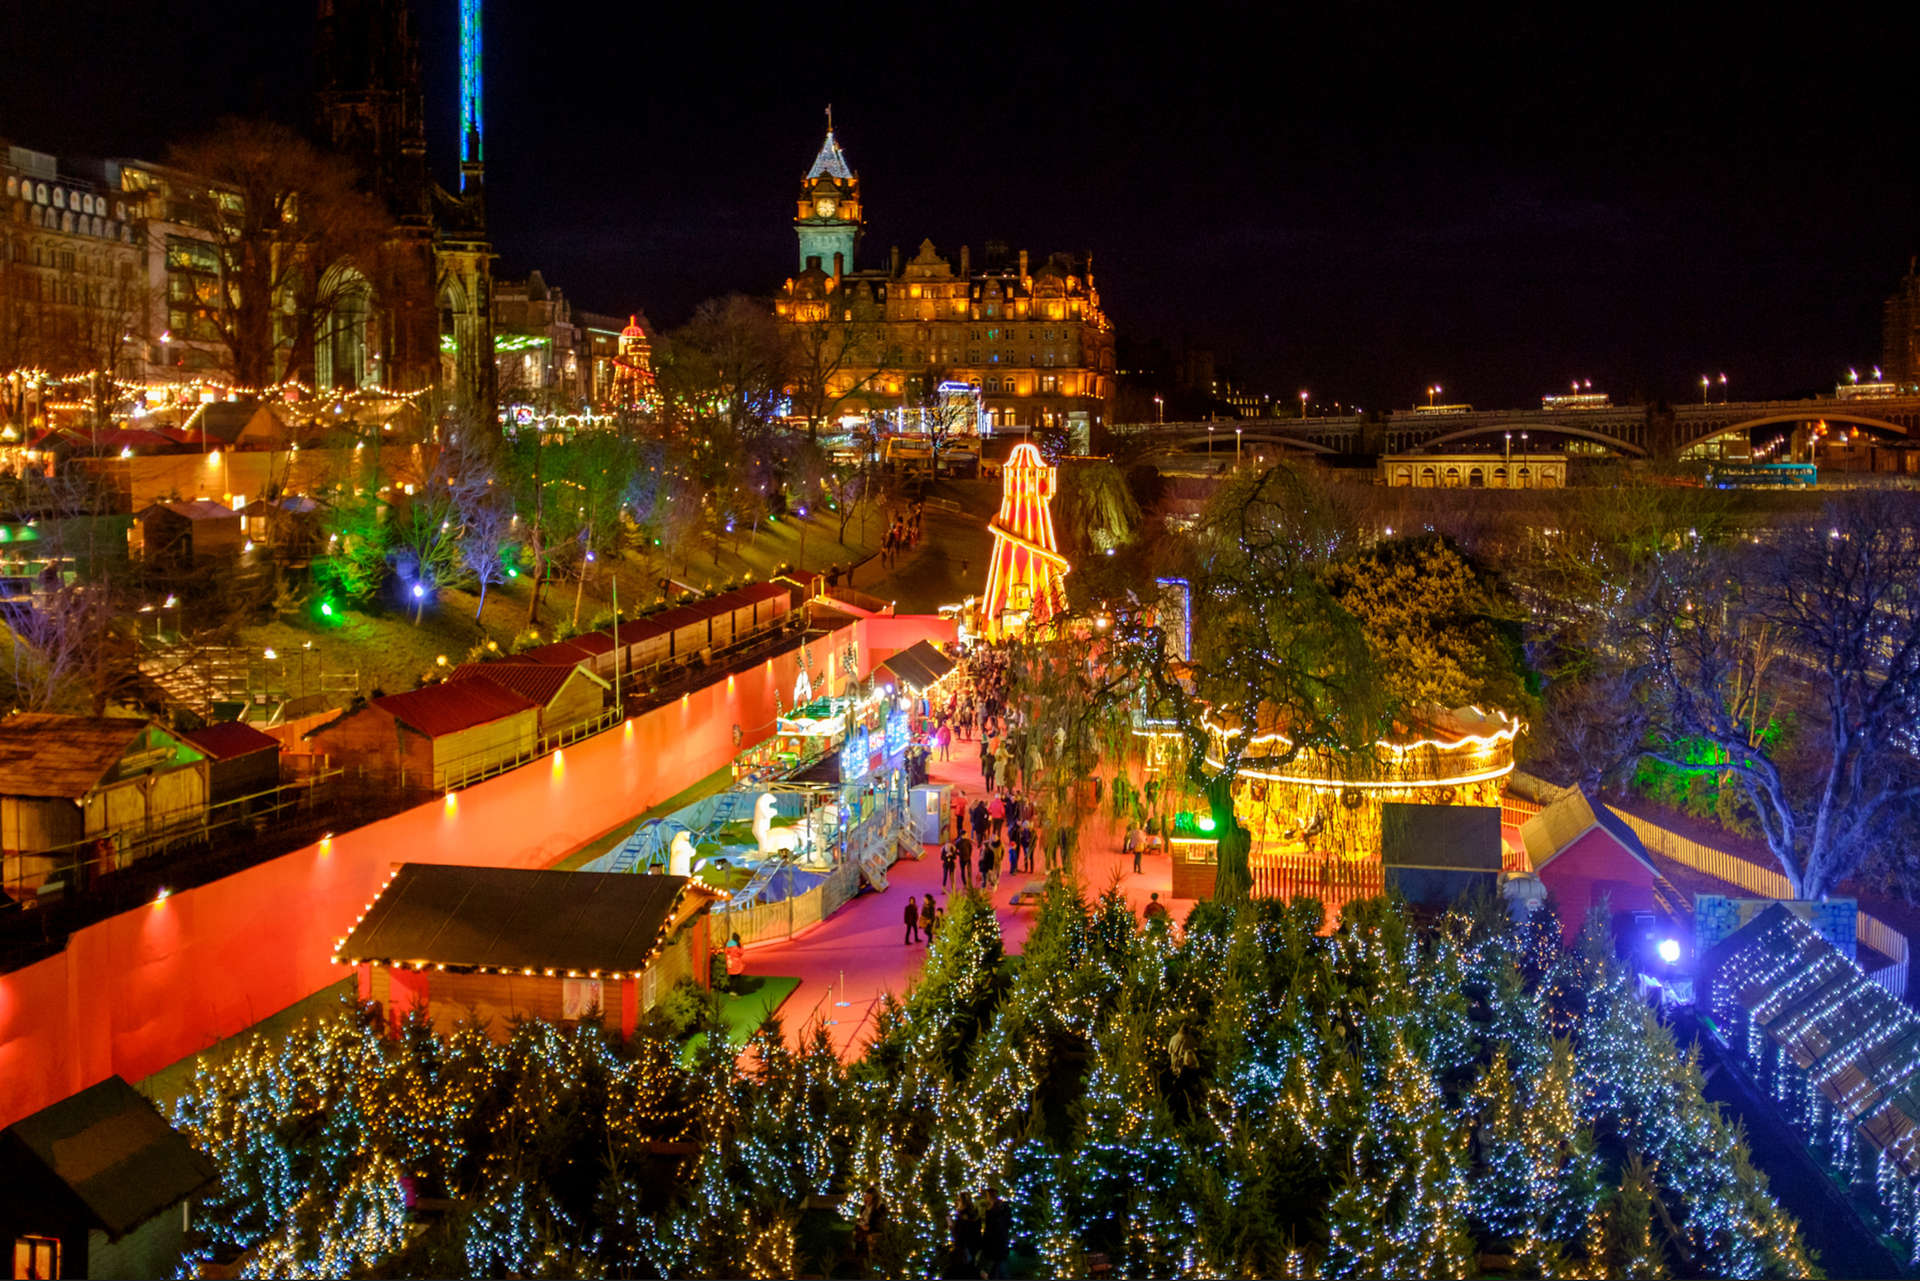  Zur Weihnachtszeit ist die schottische Hauptstadt Edinburgh weihnachtlich dekoriert